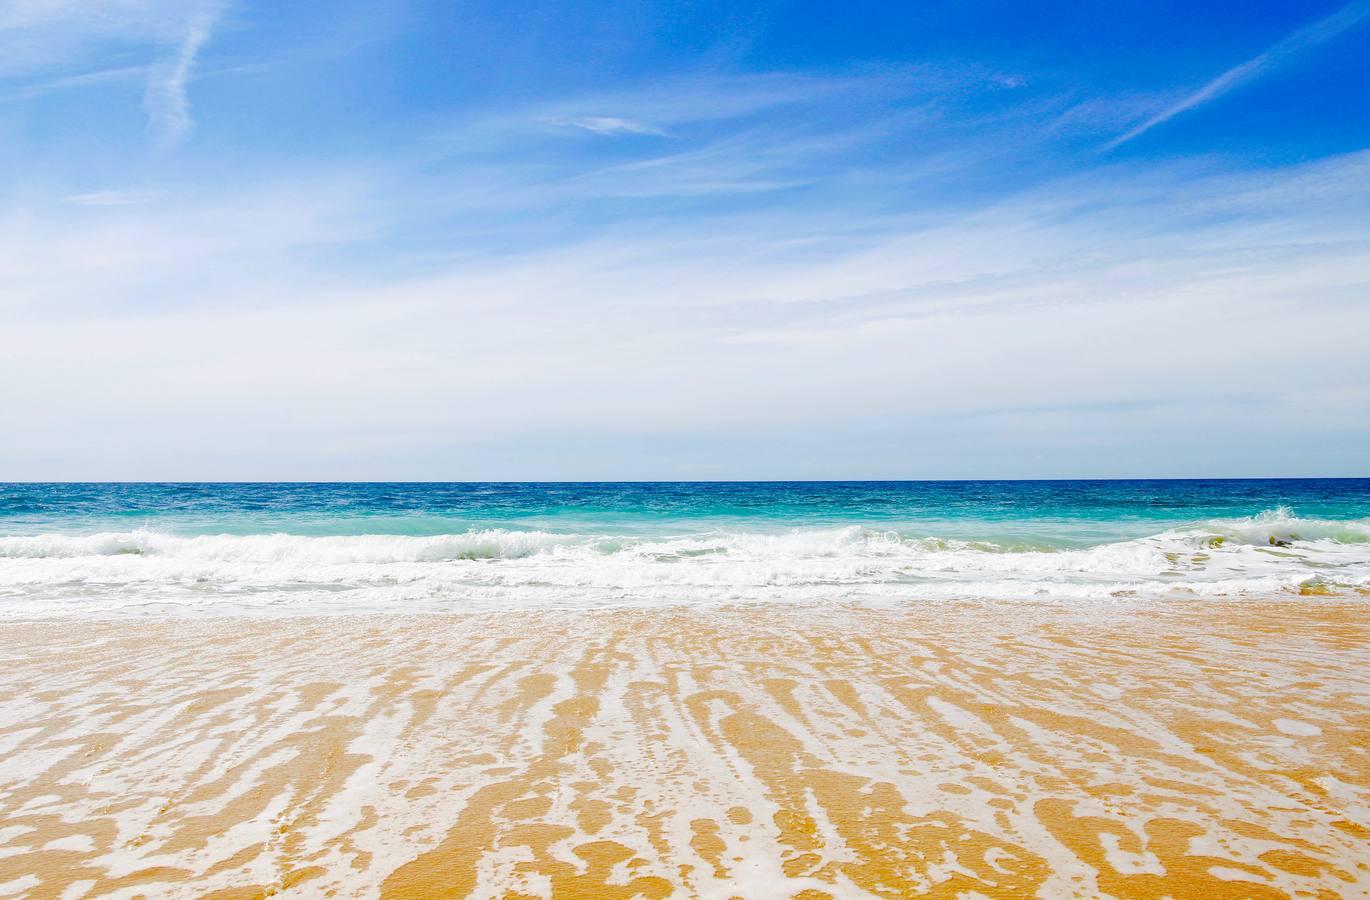 FOTOS: ¿Cuál es tu imagen favorita de las playas de Cádiz?